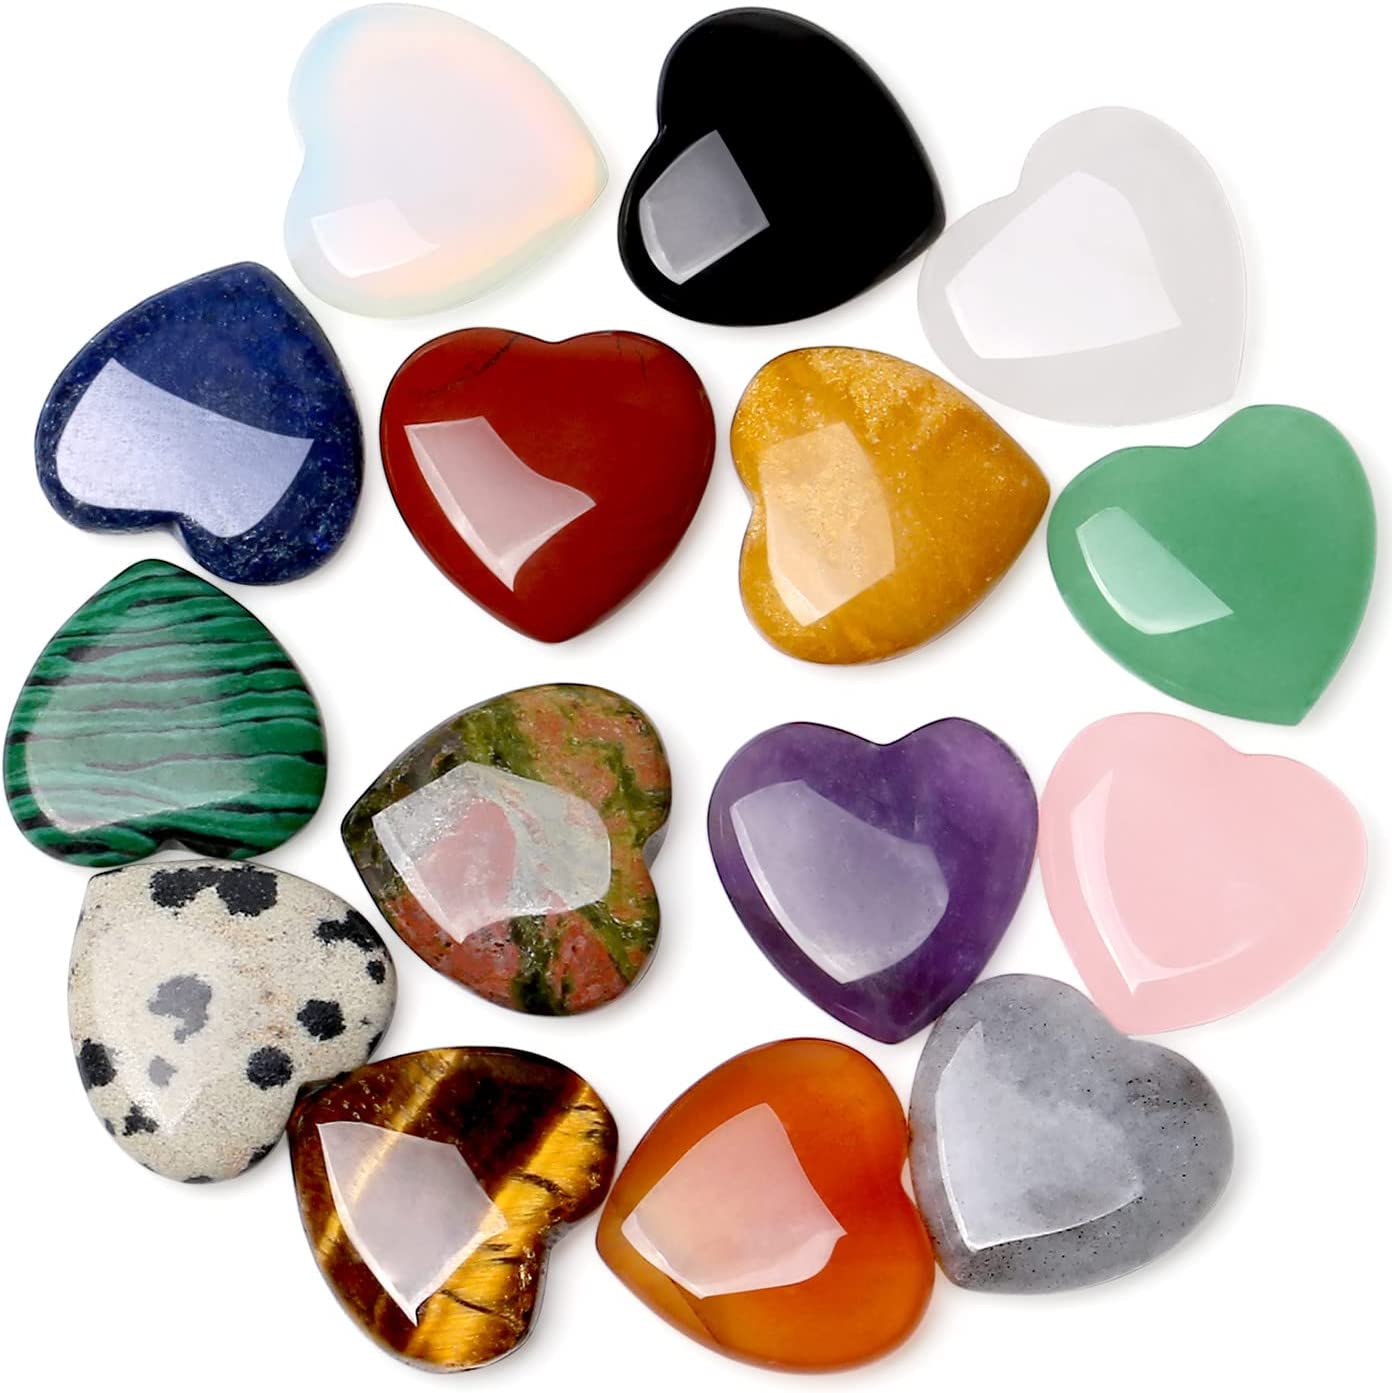 40 Pack Heart Crystals Stones Healing Crystal Palm Natural Polished Love Shaped Gemstones Rose Quartz Amethyst Assorted Set Bulk Wholesale Reiki